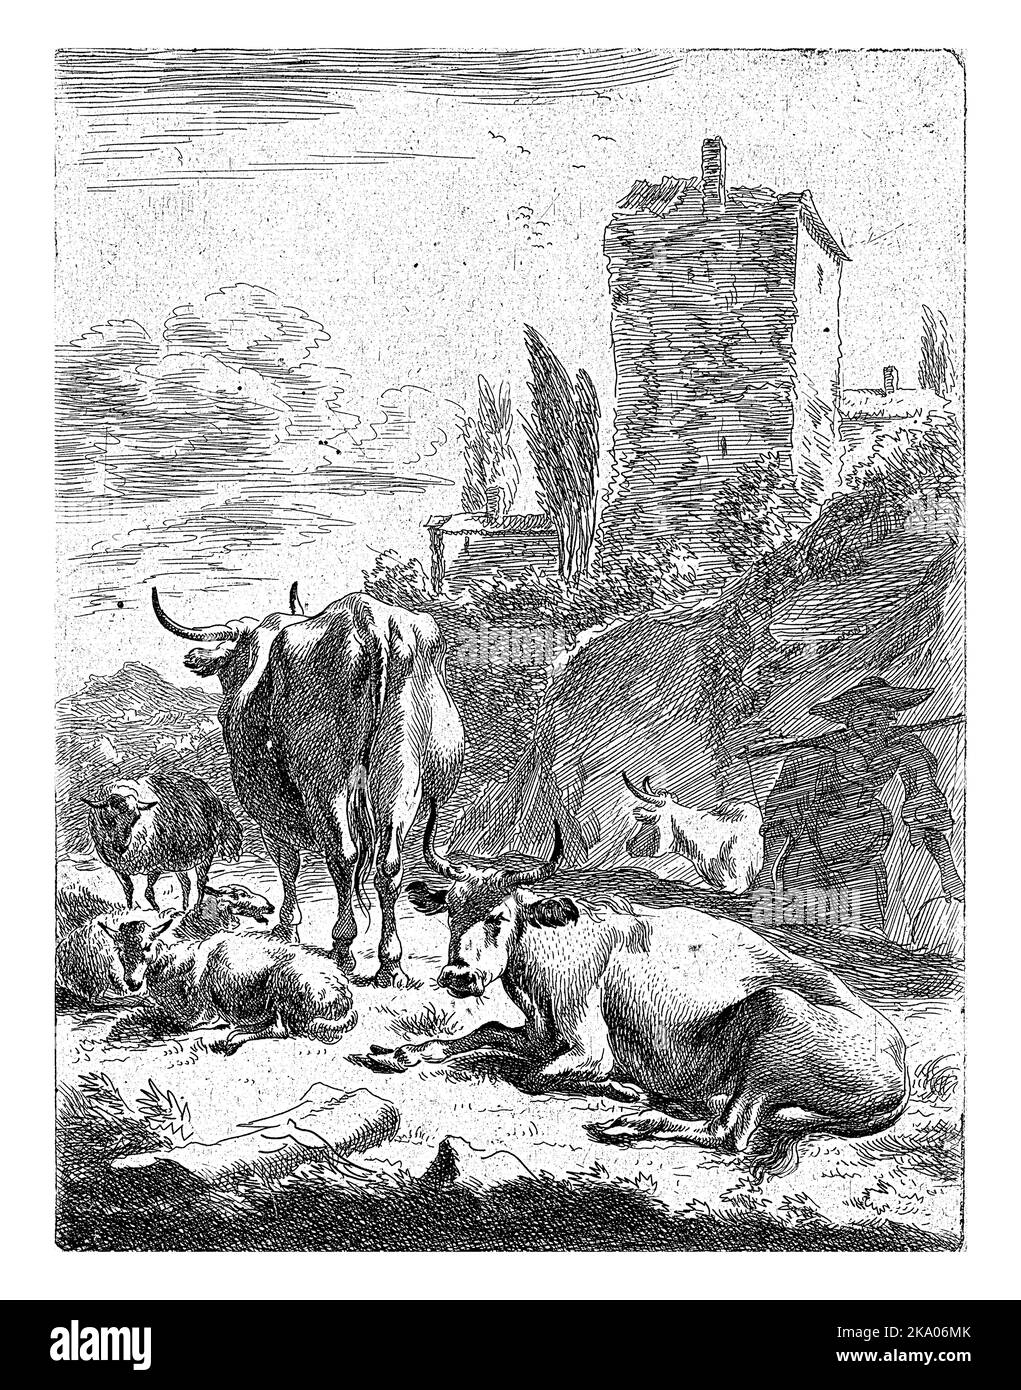 Herde in der Landschaft mit einem Turm, Jan de Visscher, nach Nicolaes Pietersz. Berchem, 1643 - 1692 in einer hügeligen Landschaft steht eine Herde Kühe und Shee Stockfoto